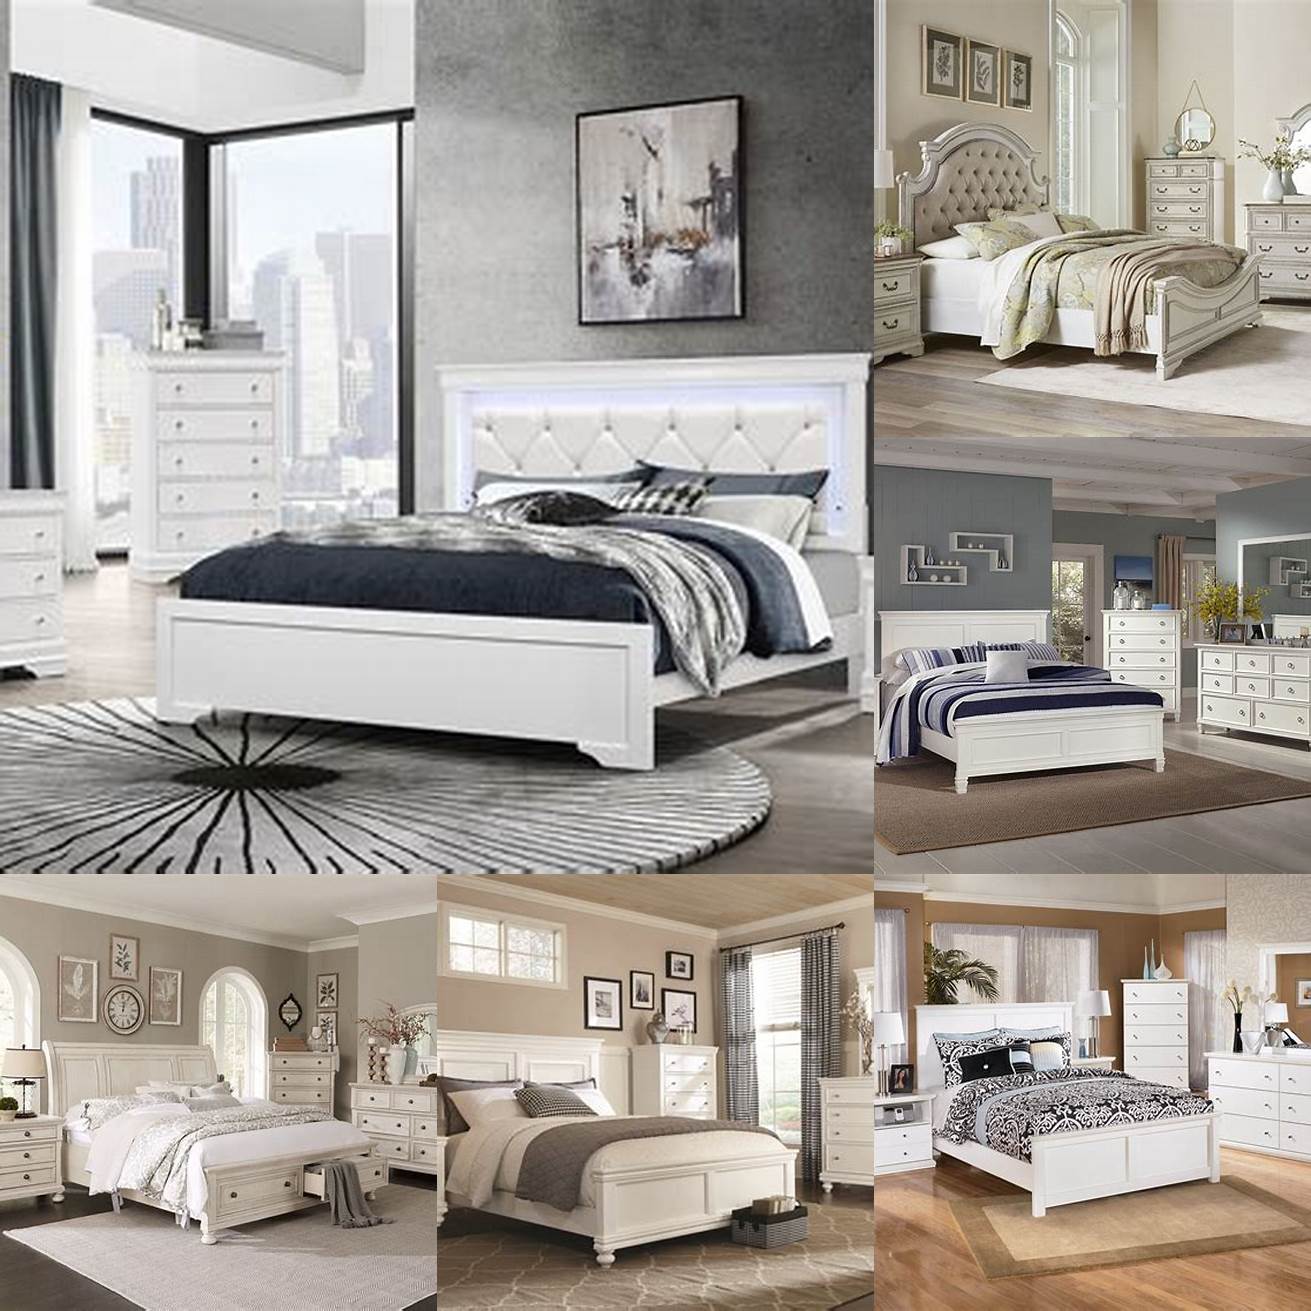 Classic white bedroom set